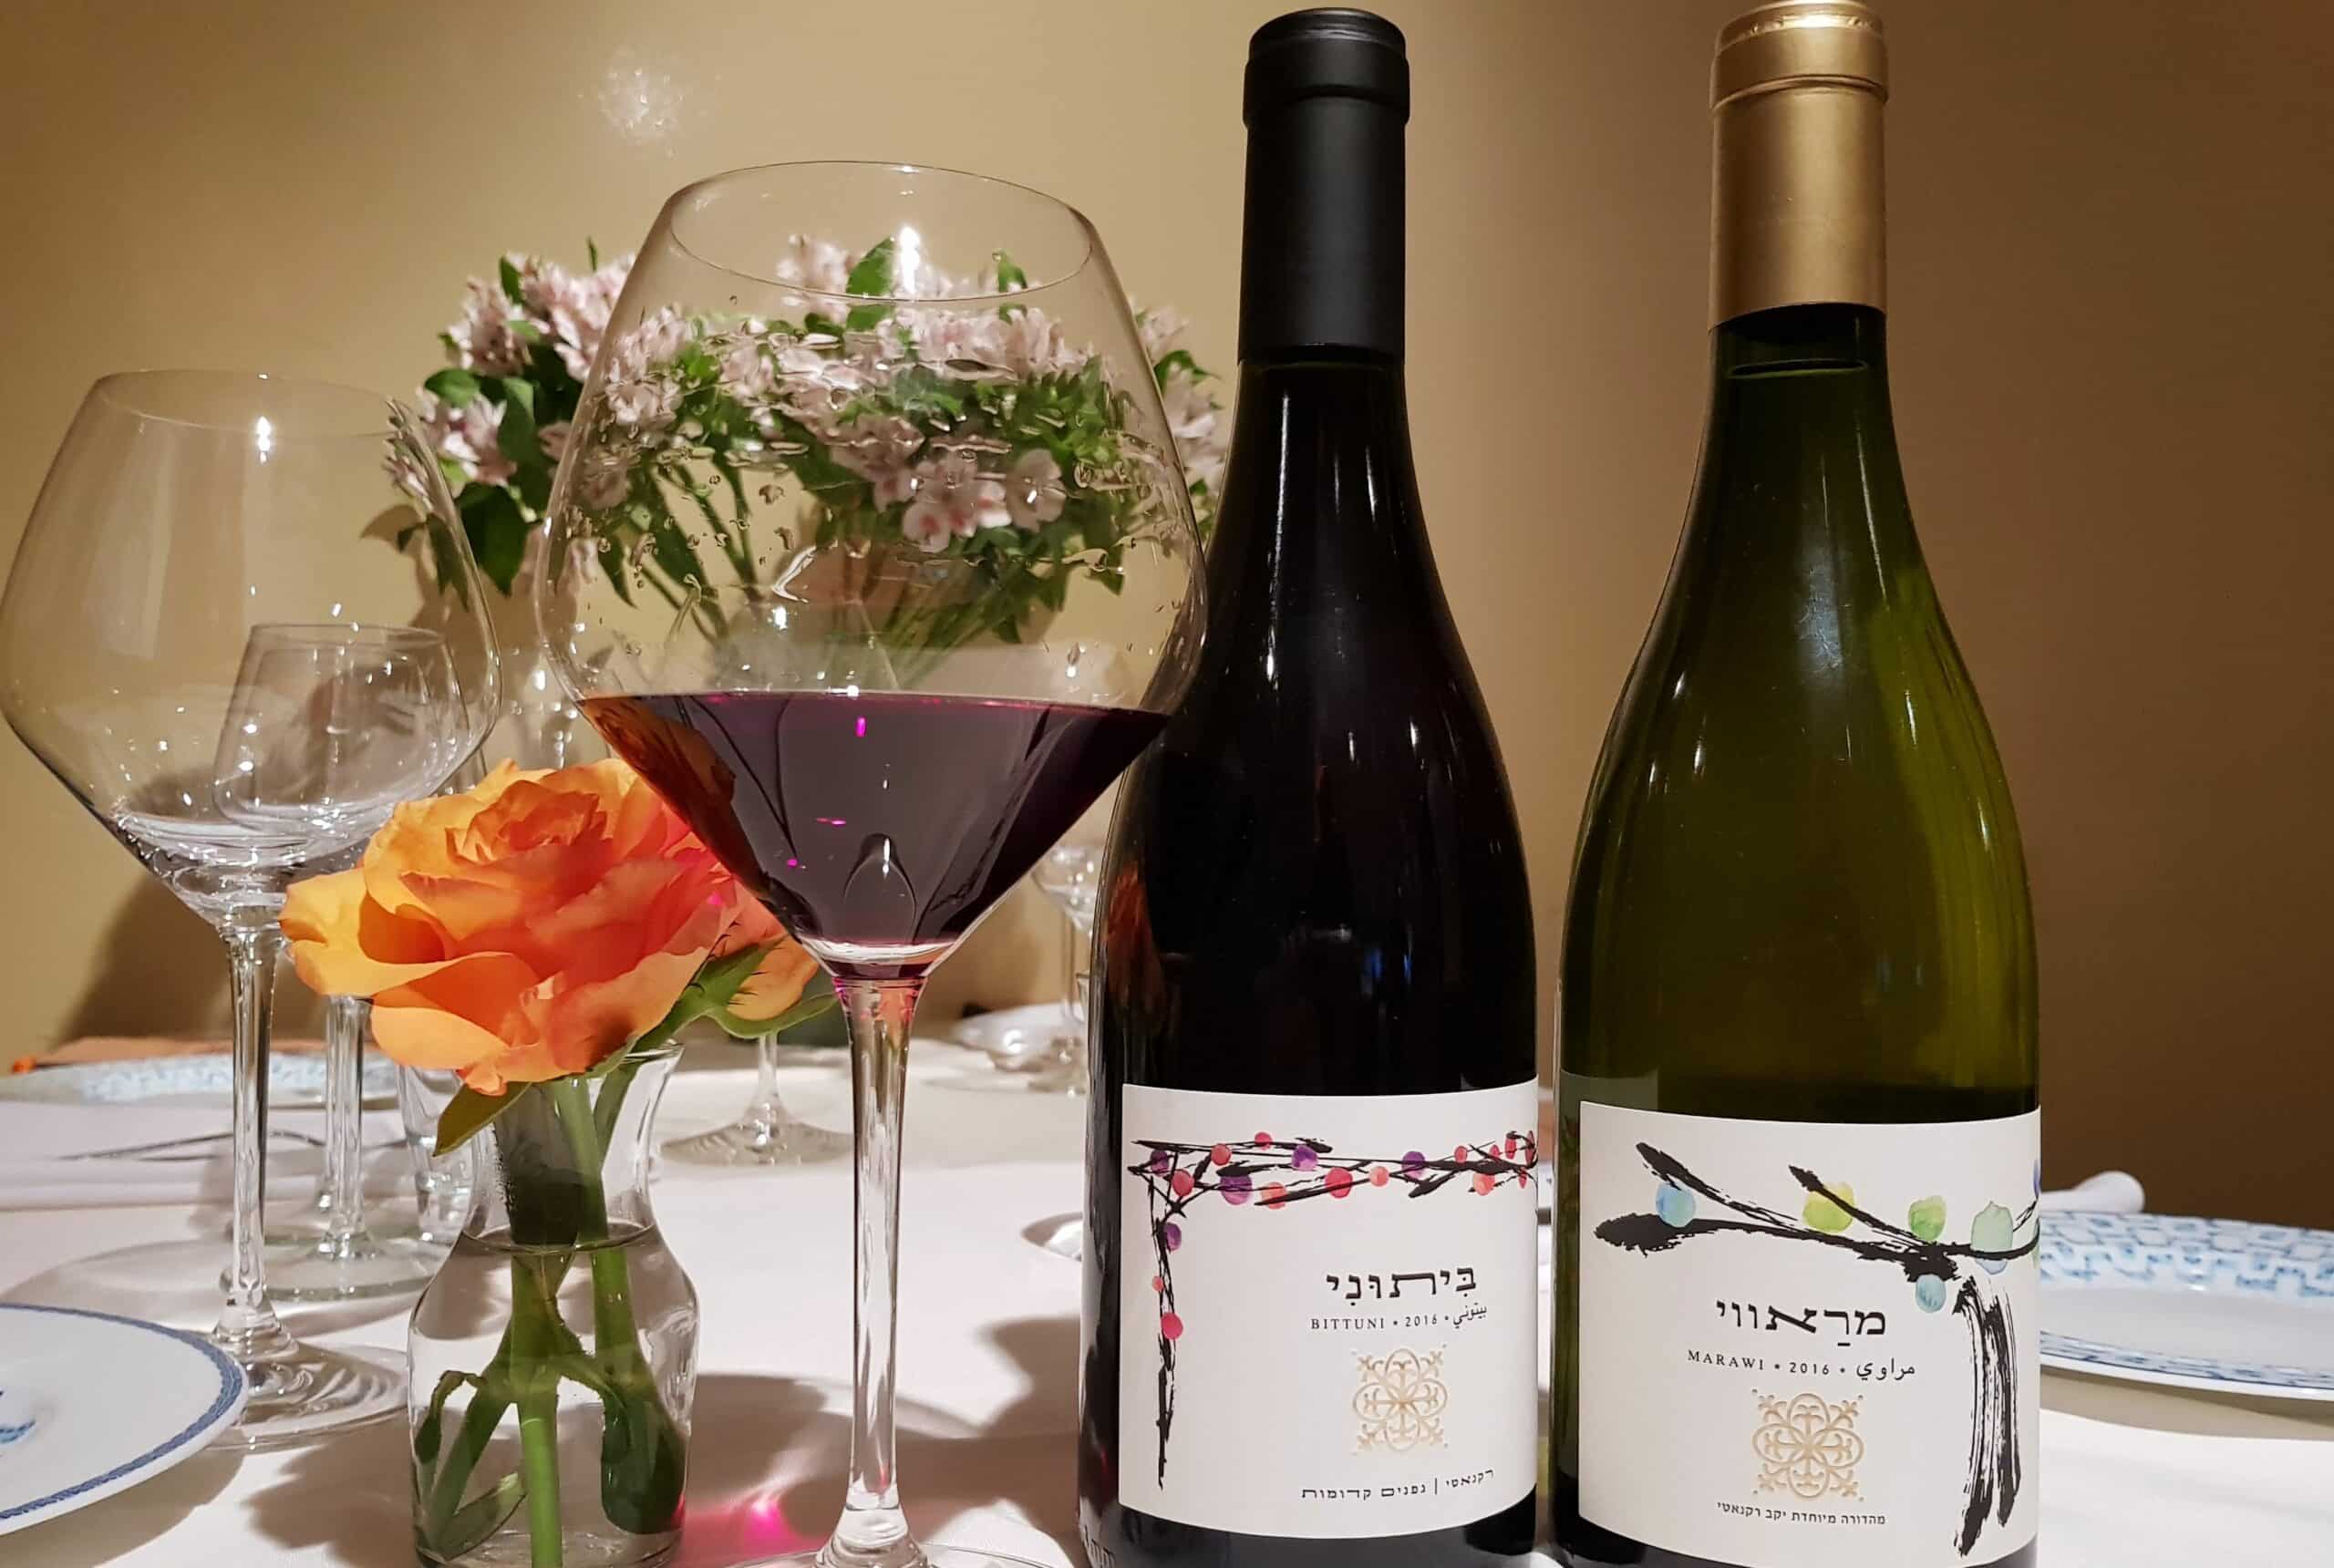 יקב רקנאטי השיק שני יינות חדשים מסדרת זנים מקומיים המבוססים על המחקר של הפרופסורים דרורי ועמר